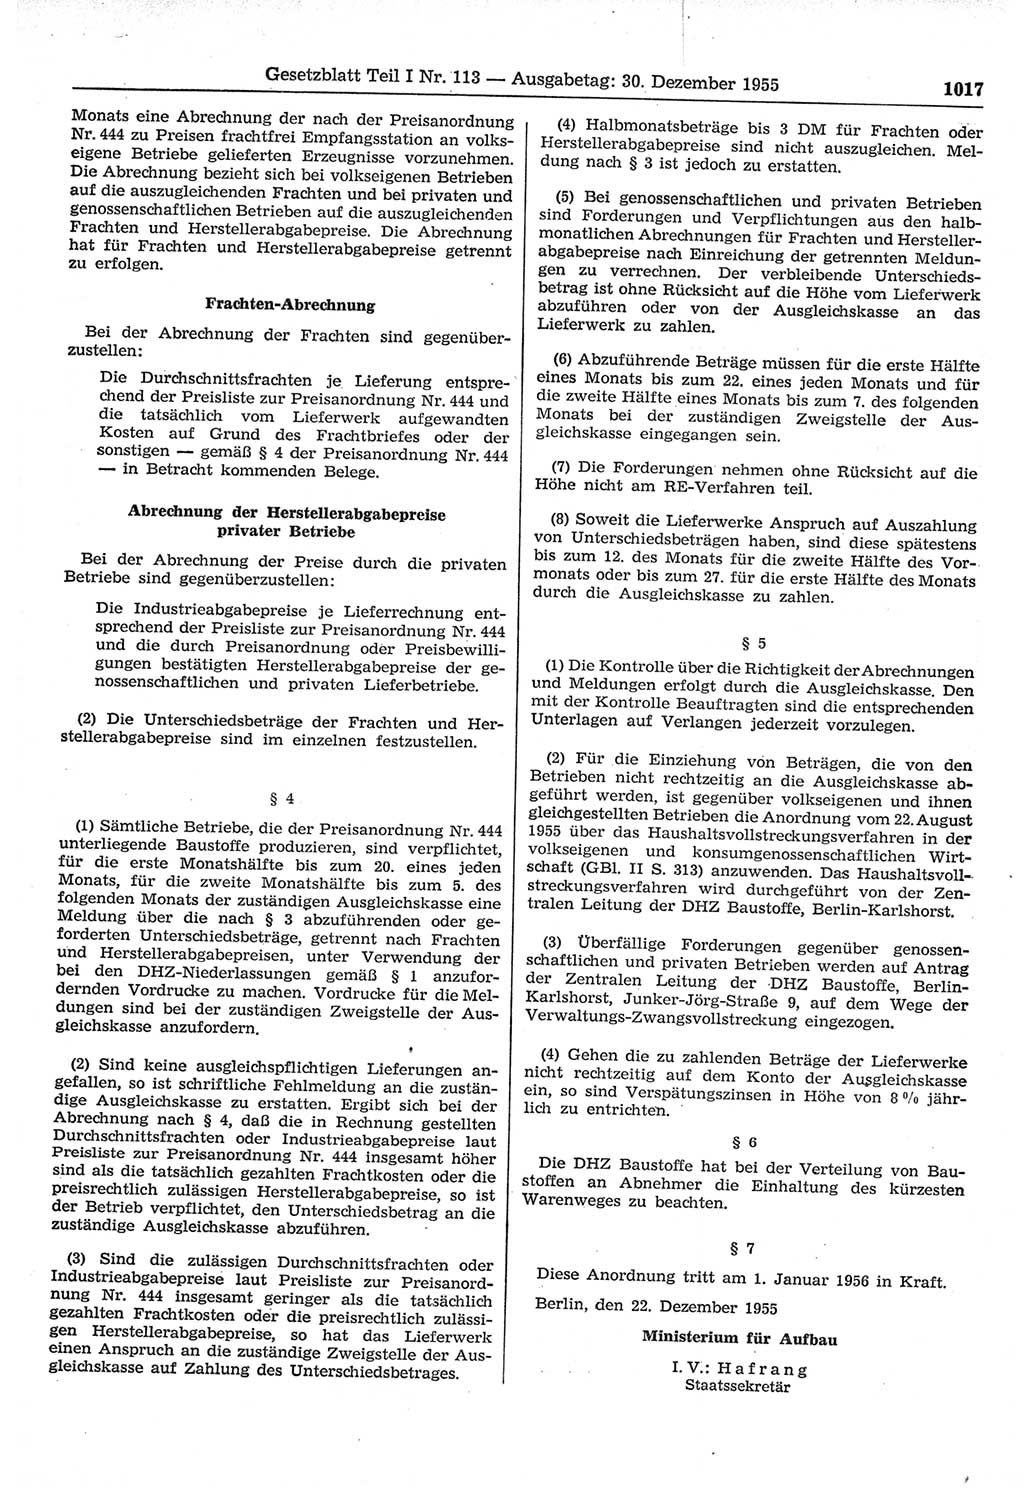 Gesetzblatt (GBl.) der Deutschen Demokratischen Republik (DDR) Teil Ⅰ 1955, Seite 1017 (GBl. DDR Ⅰ 1955, S. 1017)